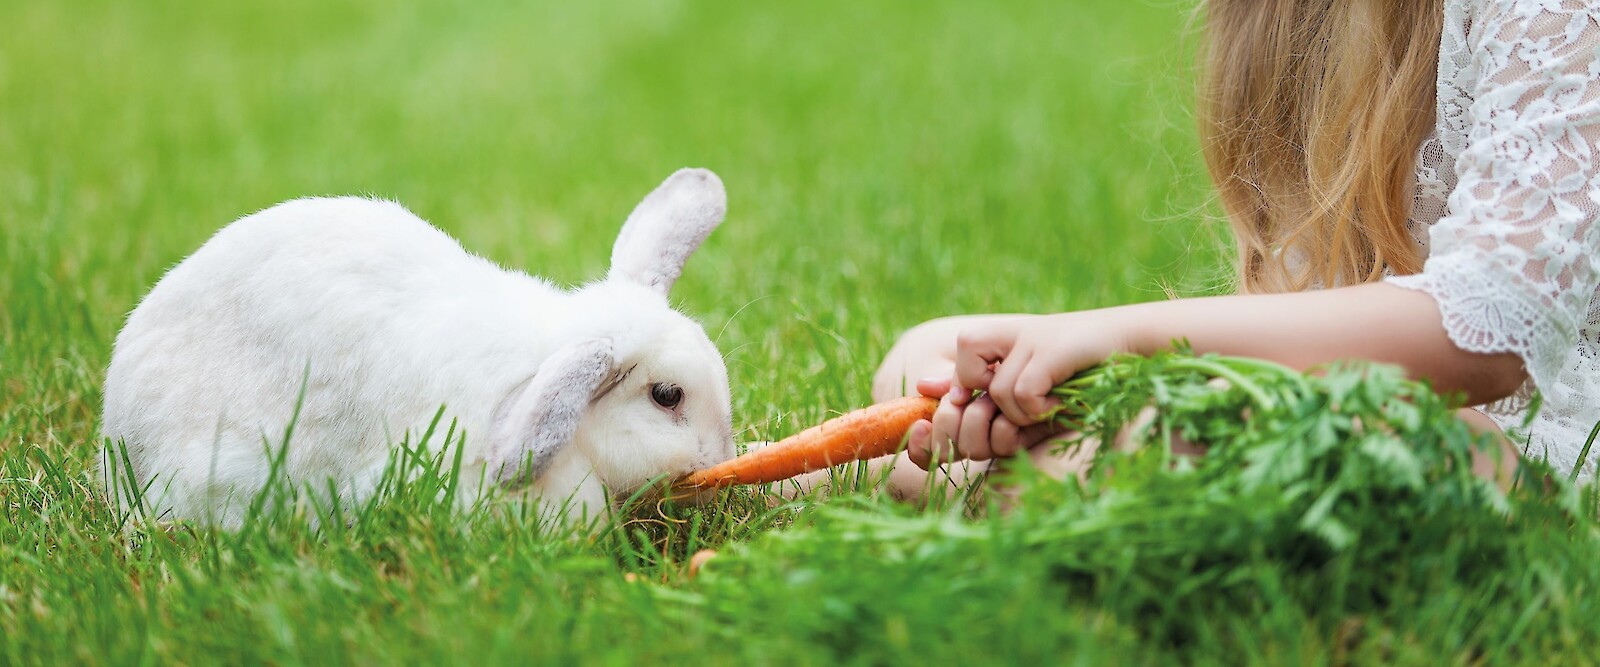 Kaninchen artgerecht füttern: Das ist kinderleicht - eigentlich (© SunKids - stock.adobe.com).